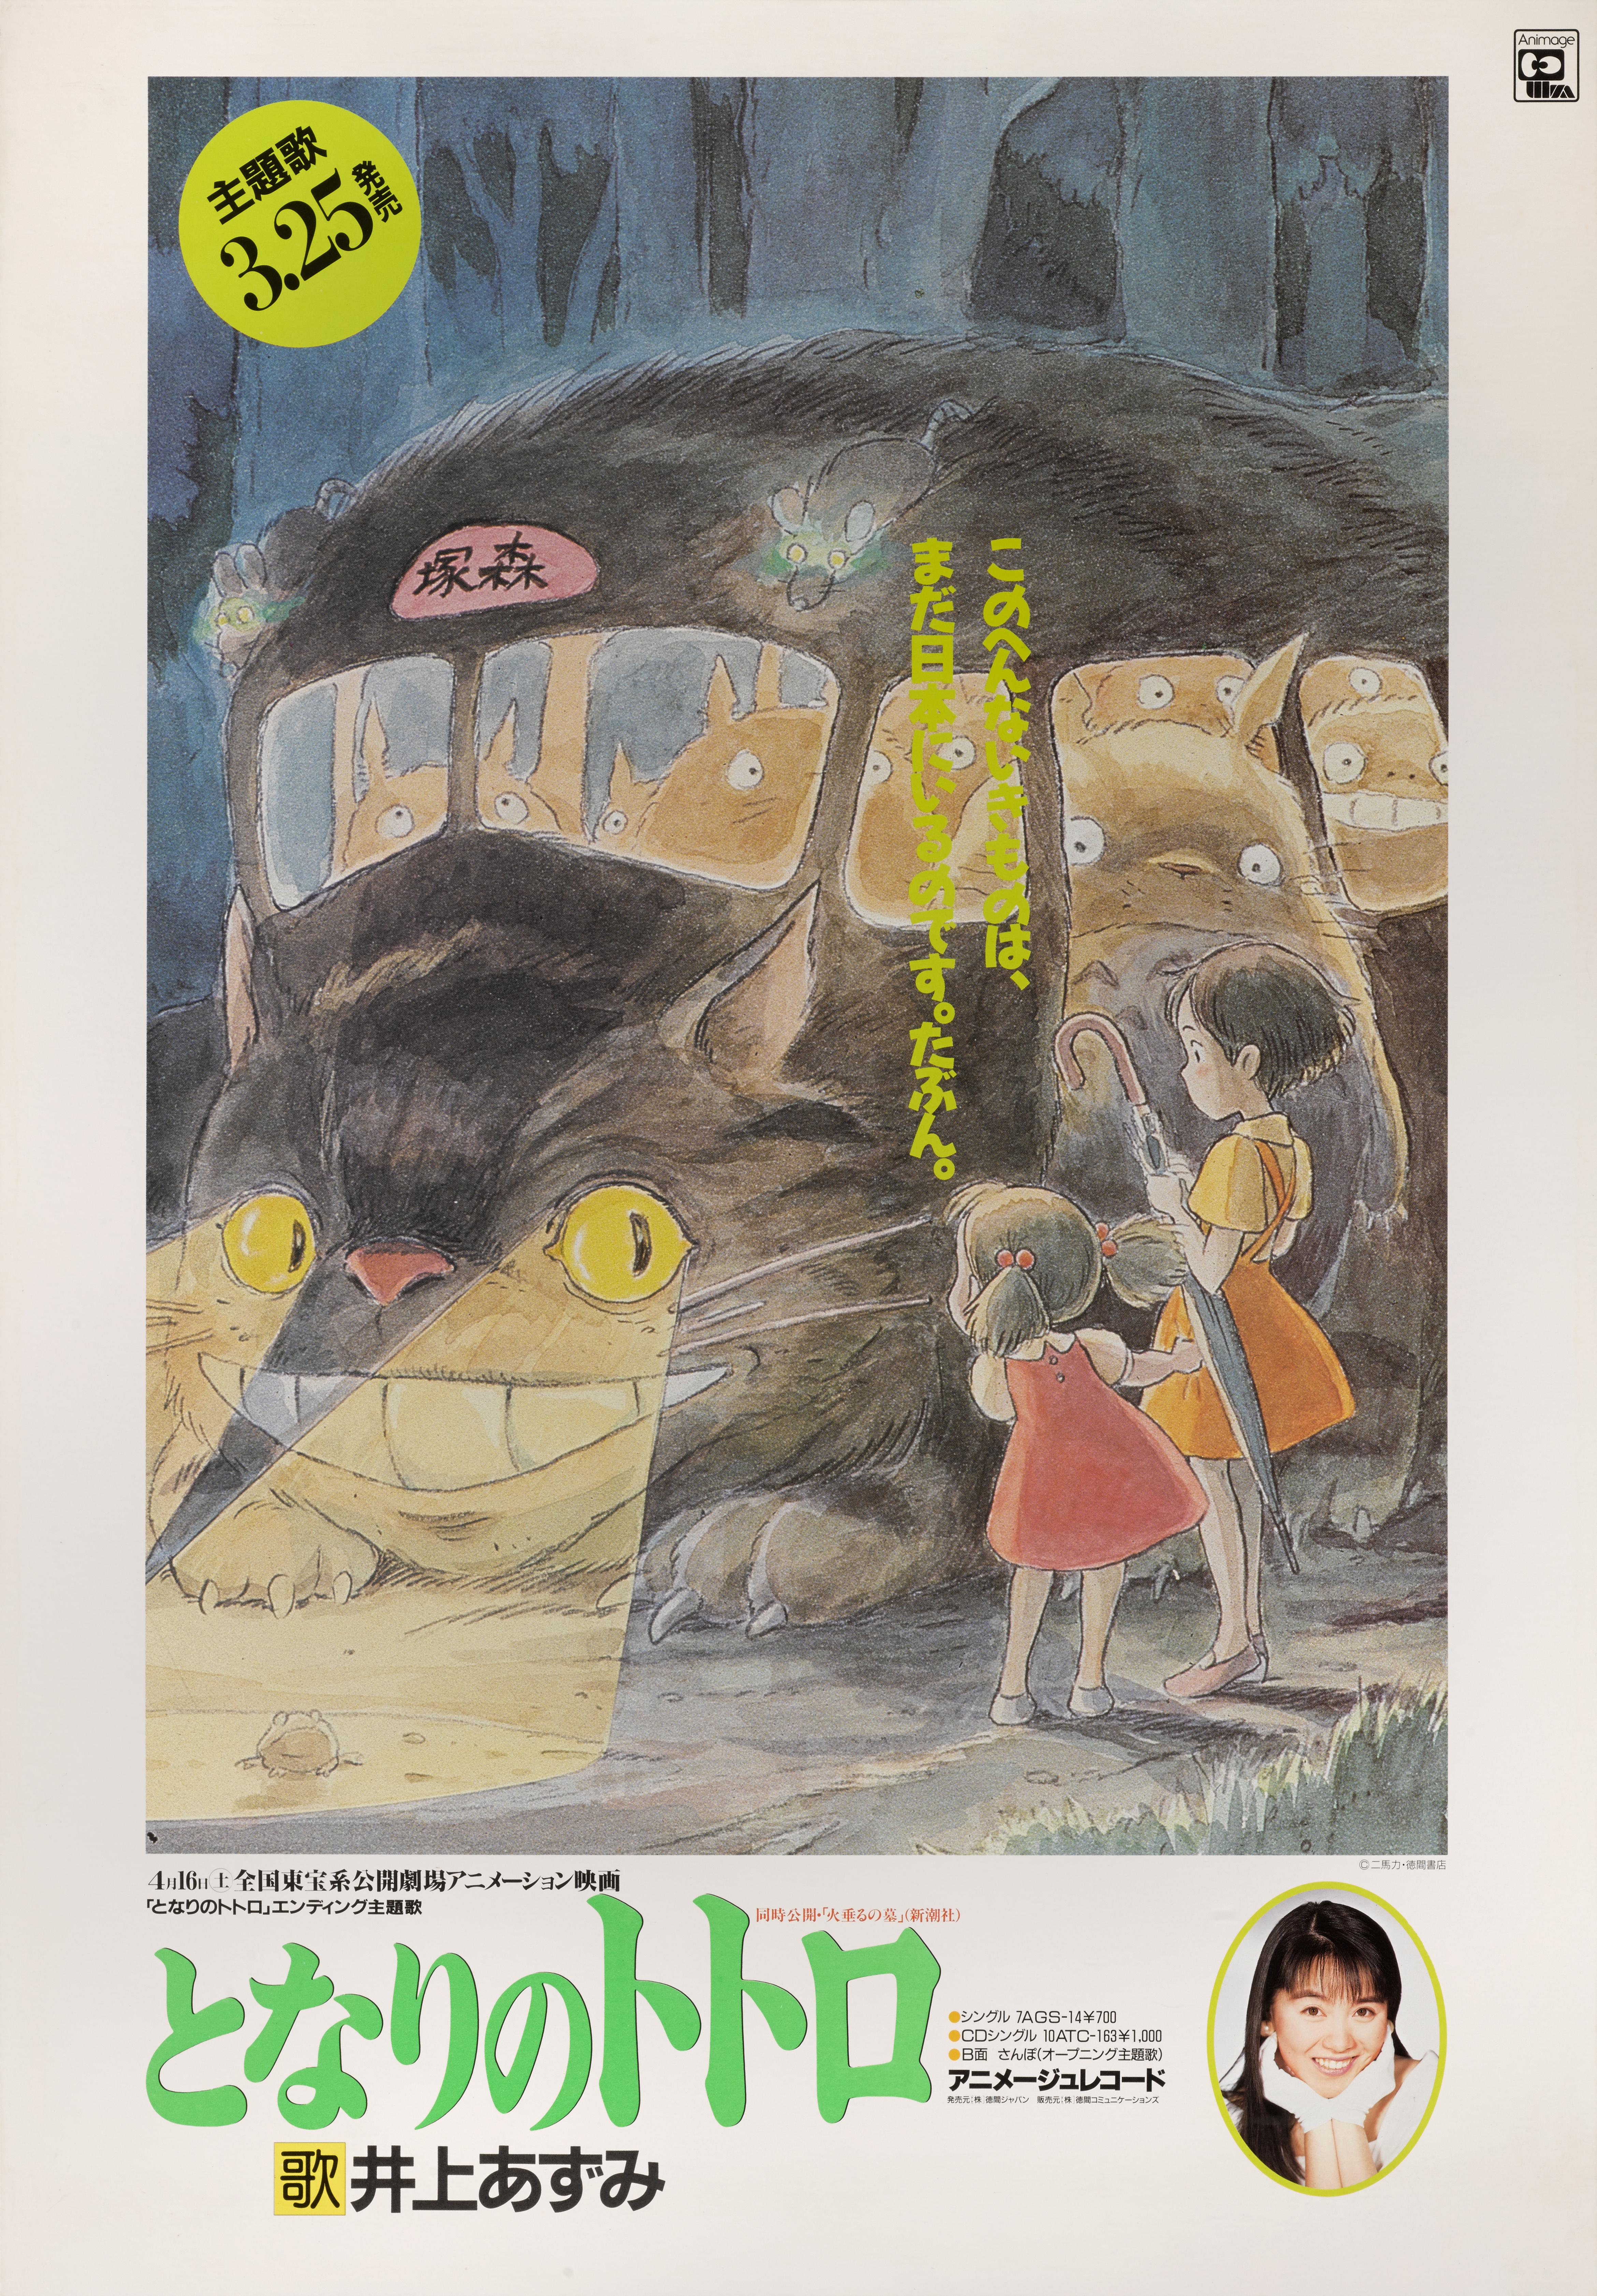 Originales japanisches Filmplakat für den Studio Ghibli-Animationsfilm von 1988.
Hayao Miyazaki, einer der Gründer des Studio Ghibli, schrieb diesen Film und führte Regie. Das 1985 gegründete Studio Ghibli hat schon viele zauberhafte Animationen